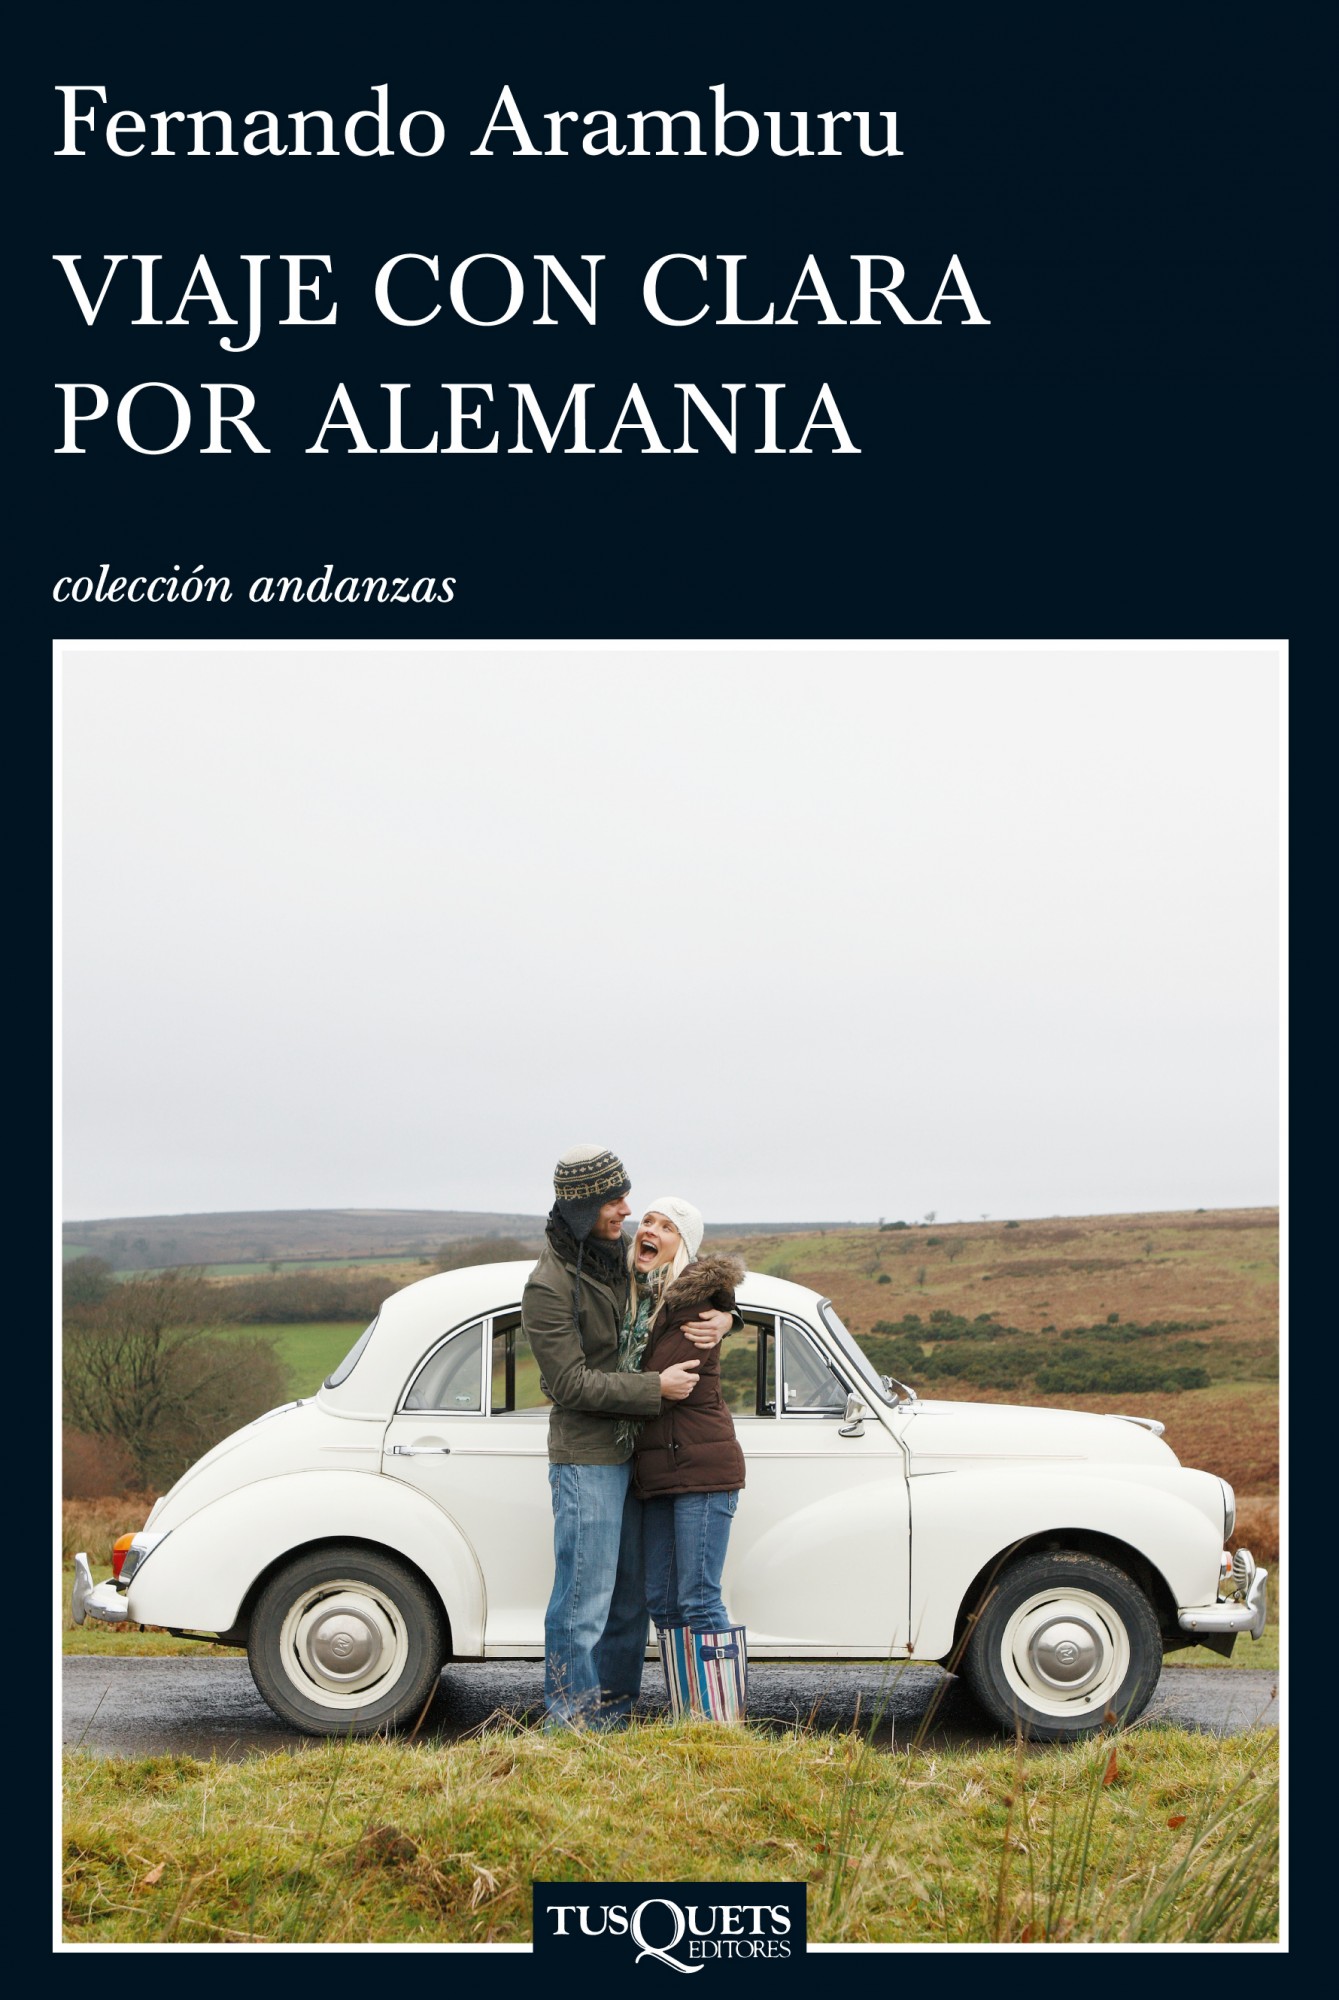 “Viaje con Clara por Alemania” von Fernando Aramburu